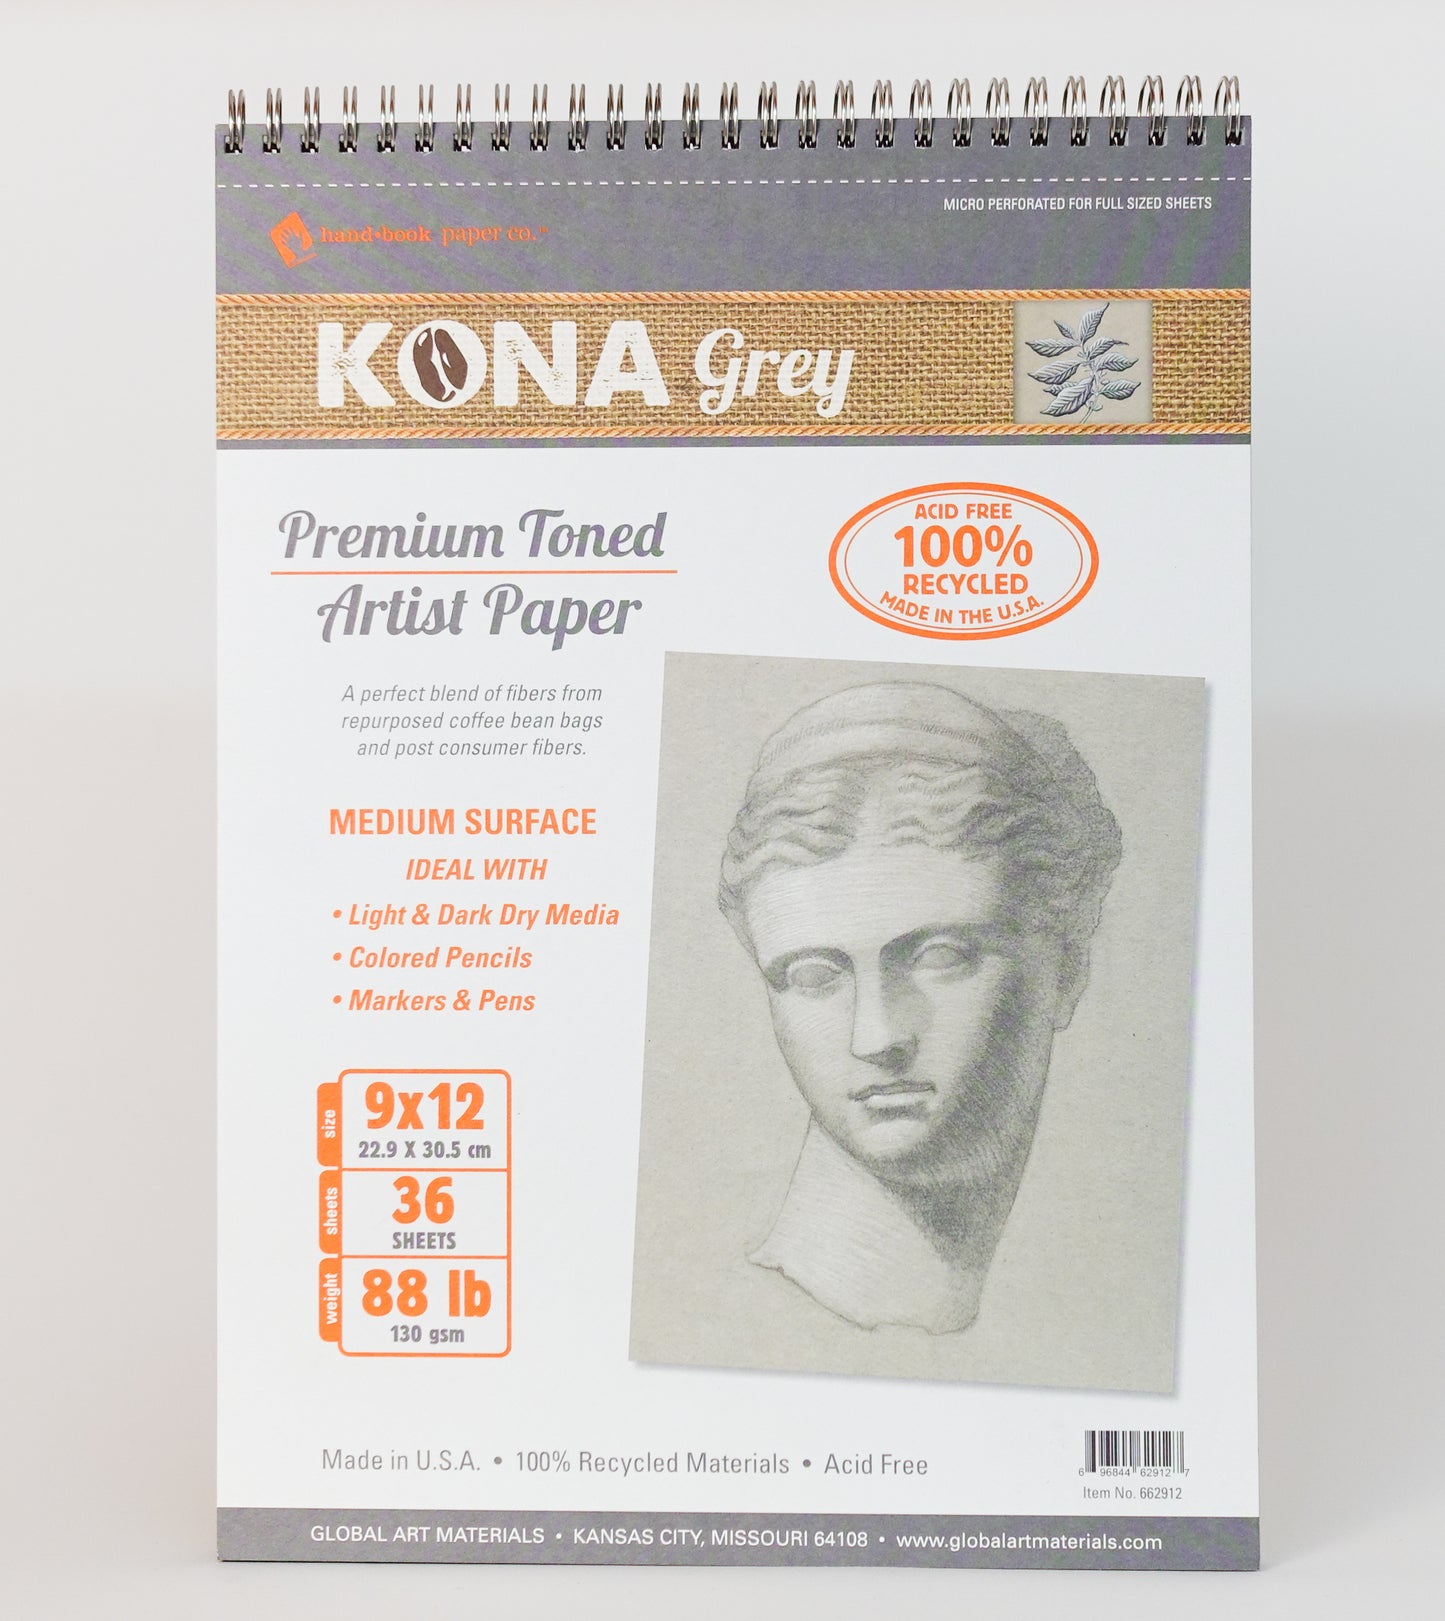 KONA Grey Premium Toned Artist Paper (9"x12" Sketchbook) - Handbook Paper Co.